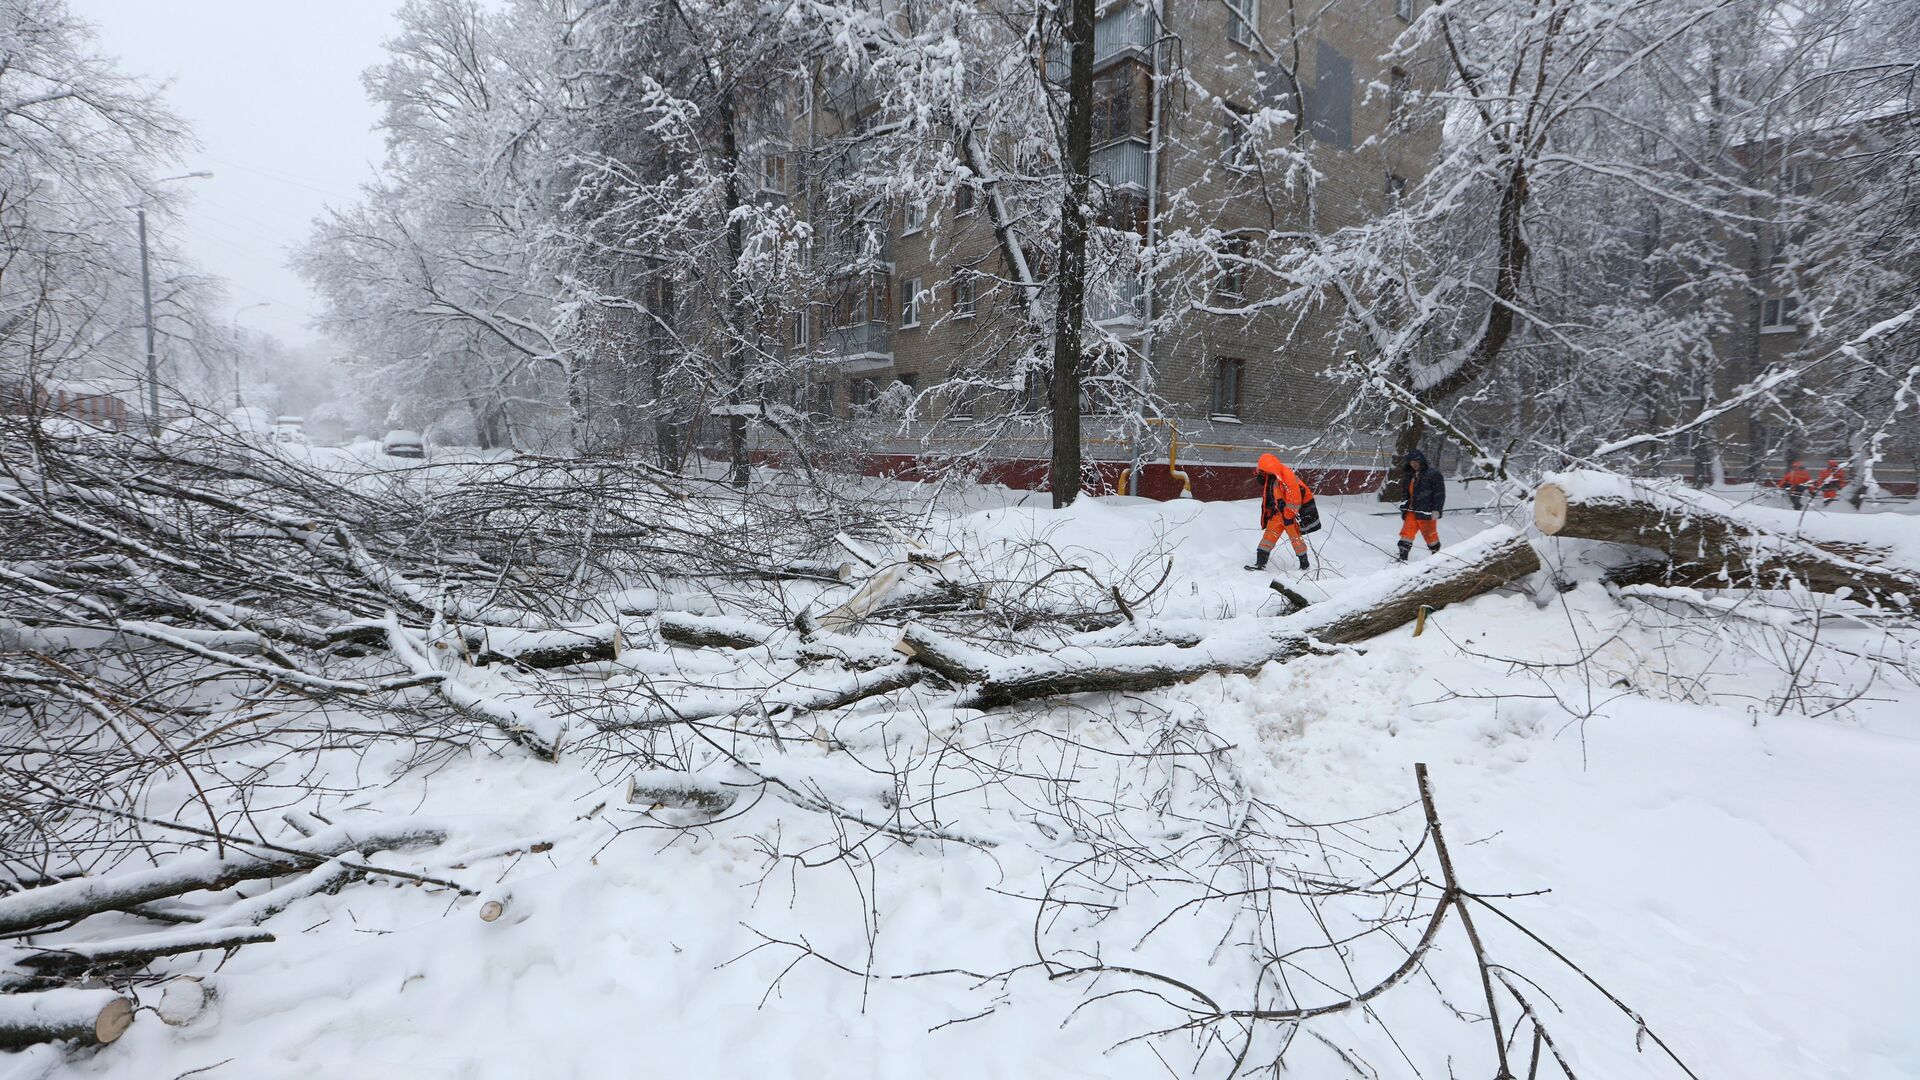 Сотрудники коммунальных служб убирают деревья во дворе в Москве, сломанные вследствие снегопада. - Sputnik Արմենիա, 1920, 02.04.2022